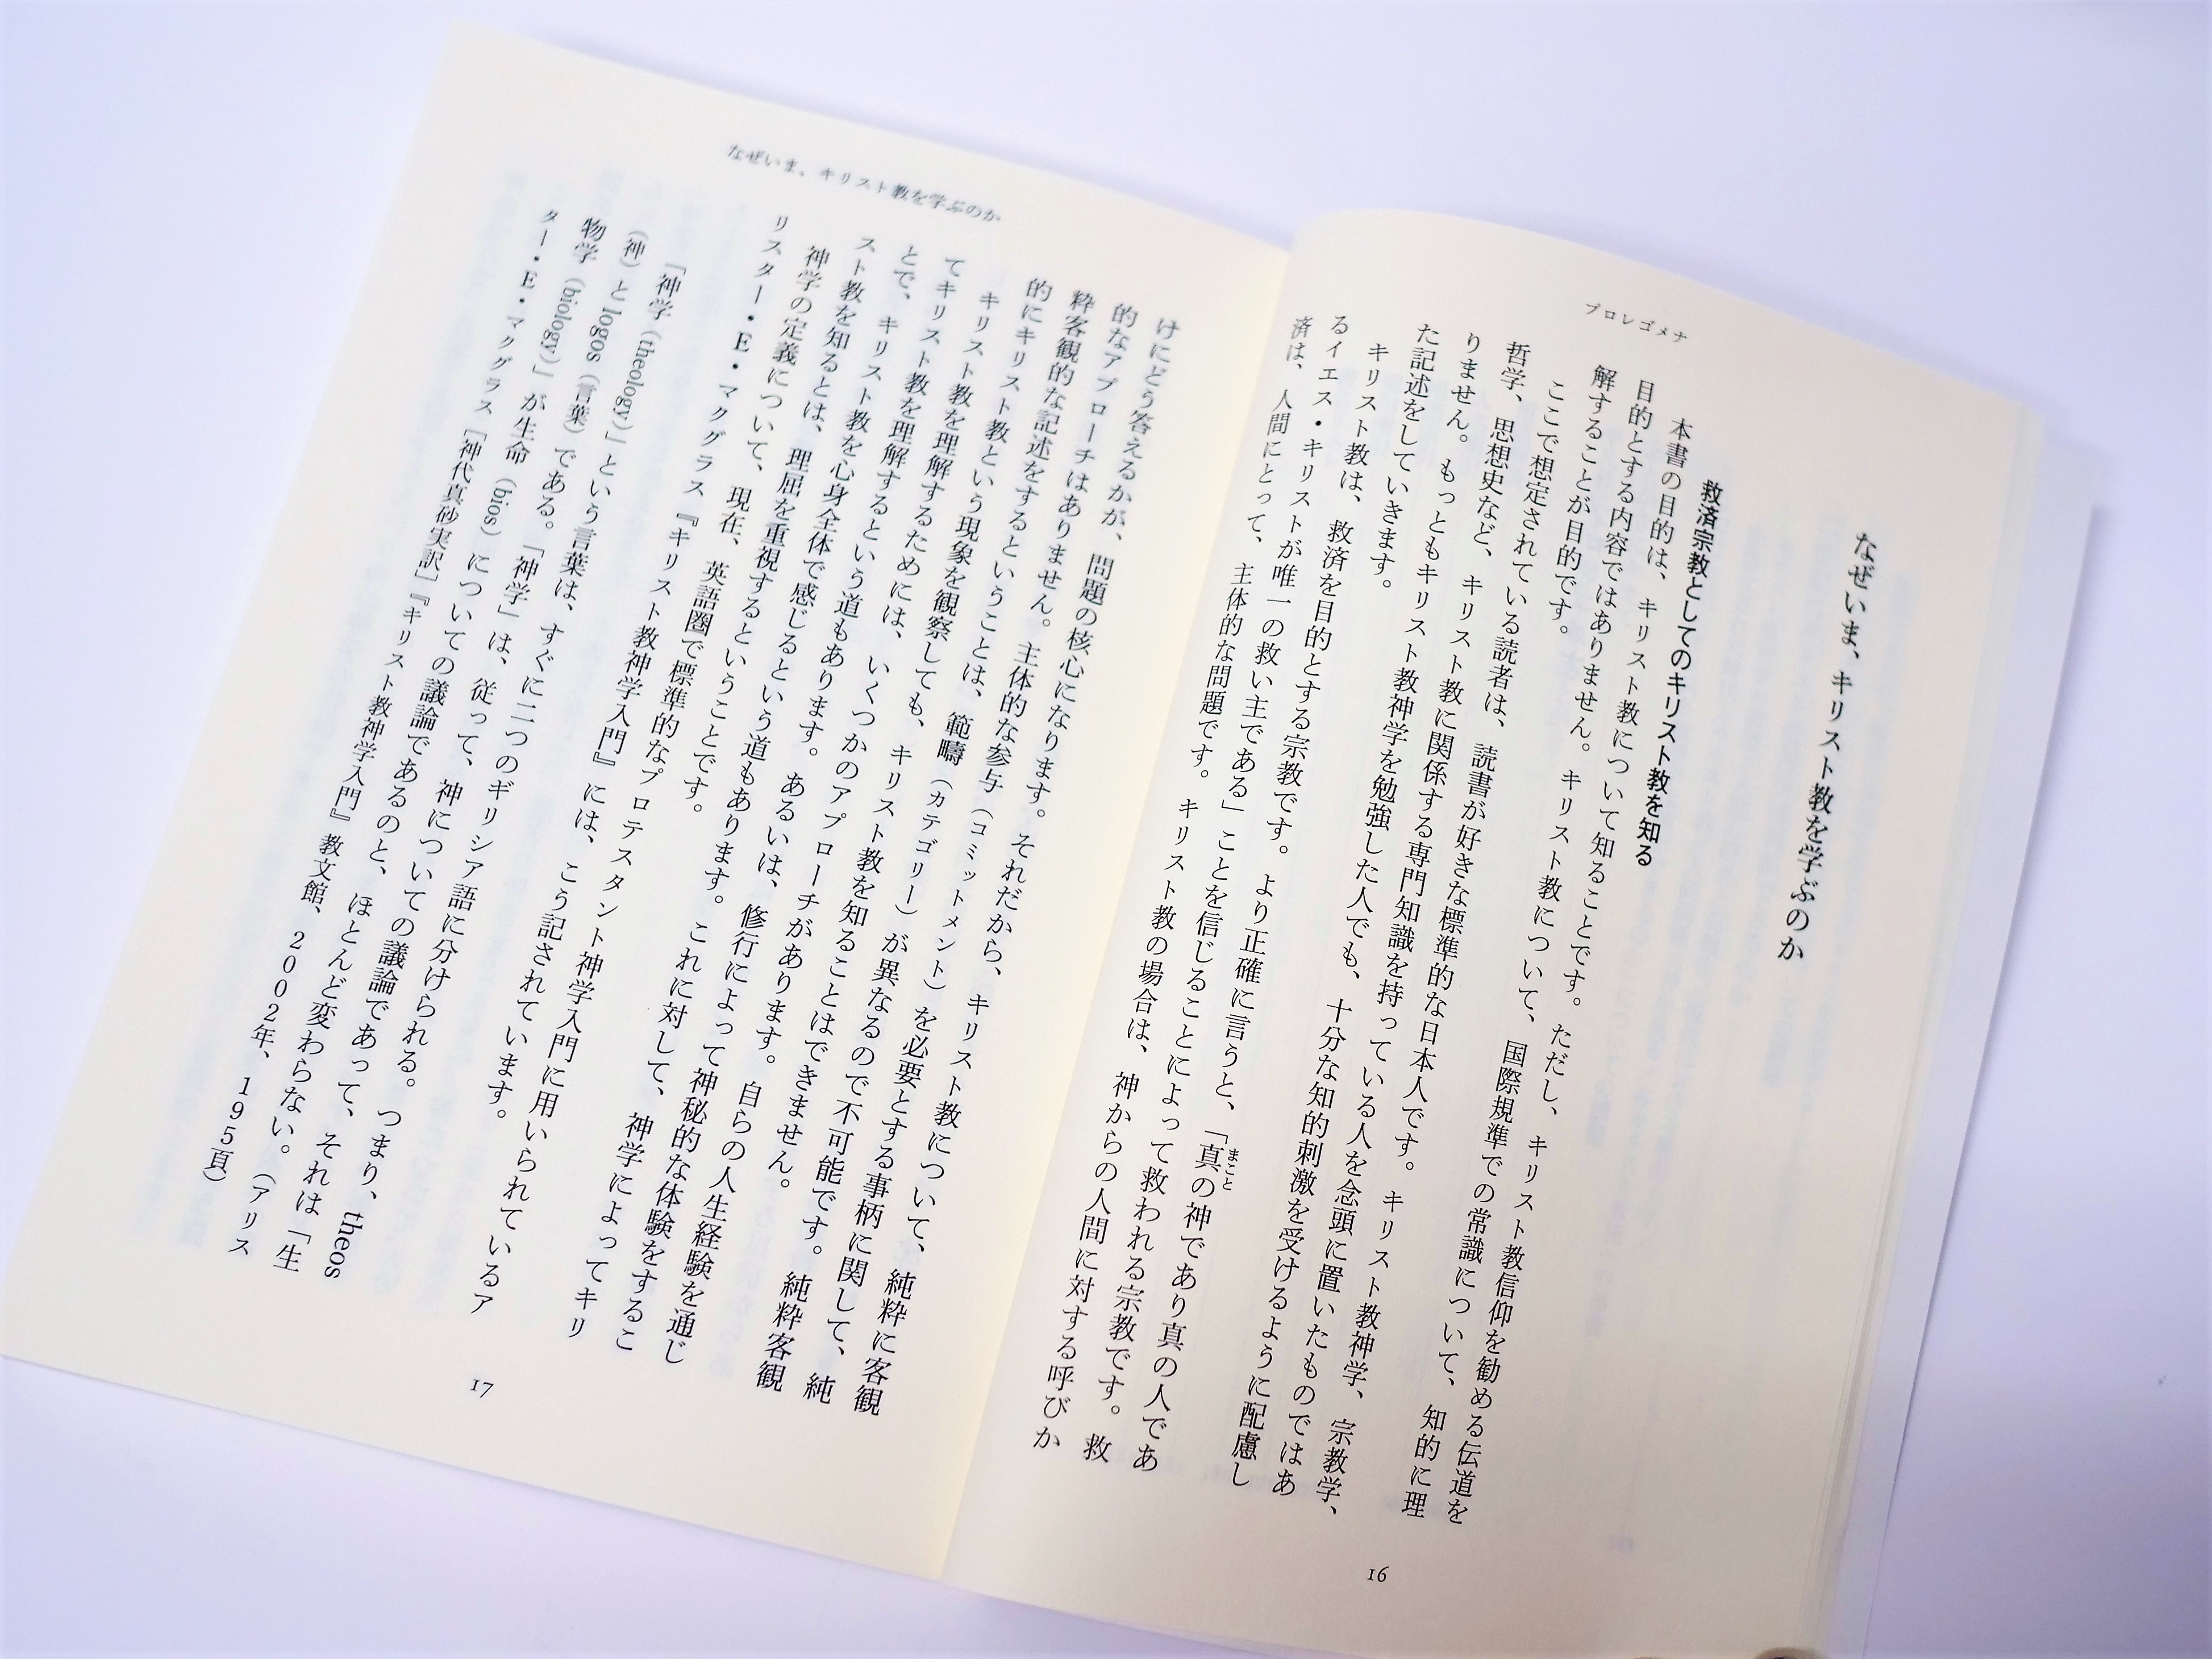 キリスト教を知らない日本人のための神学入門書。混迷する21世紀を